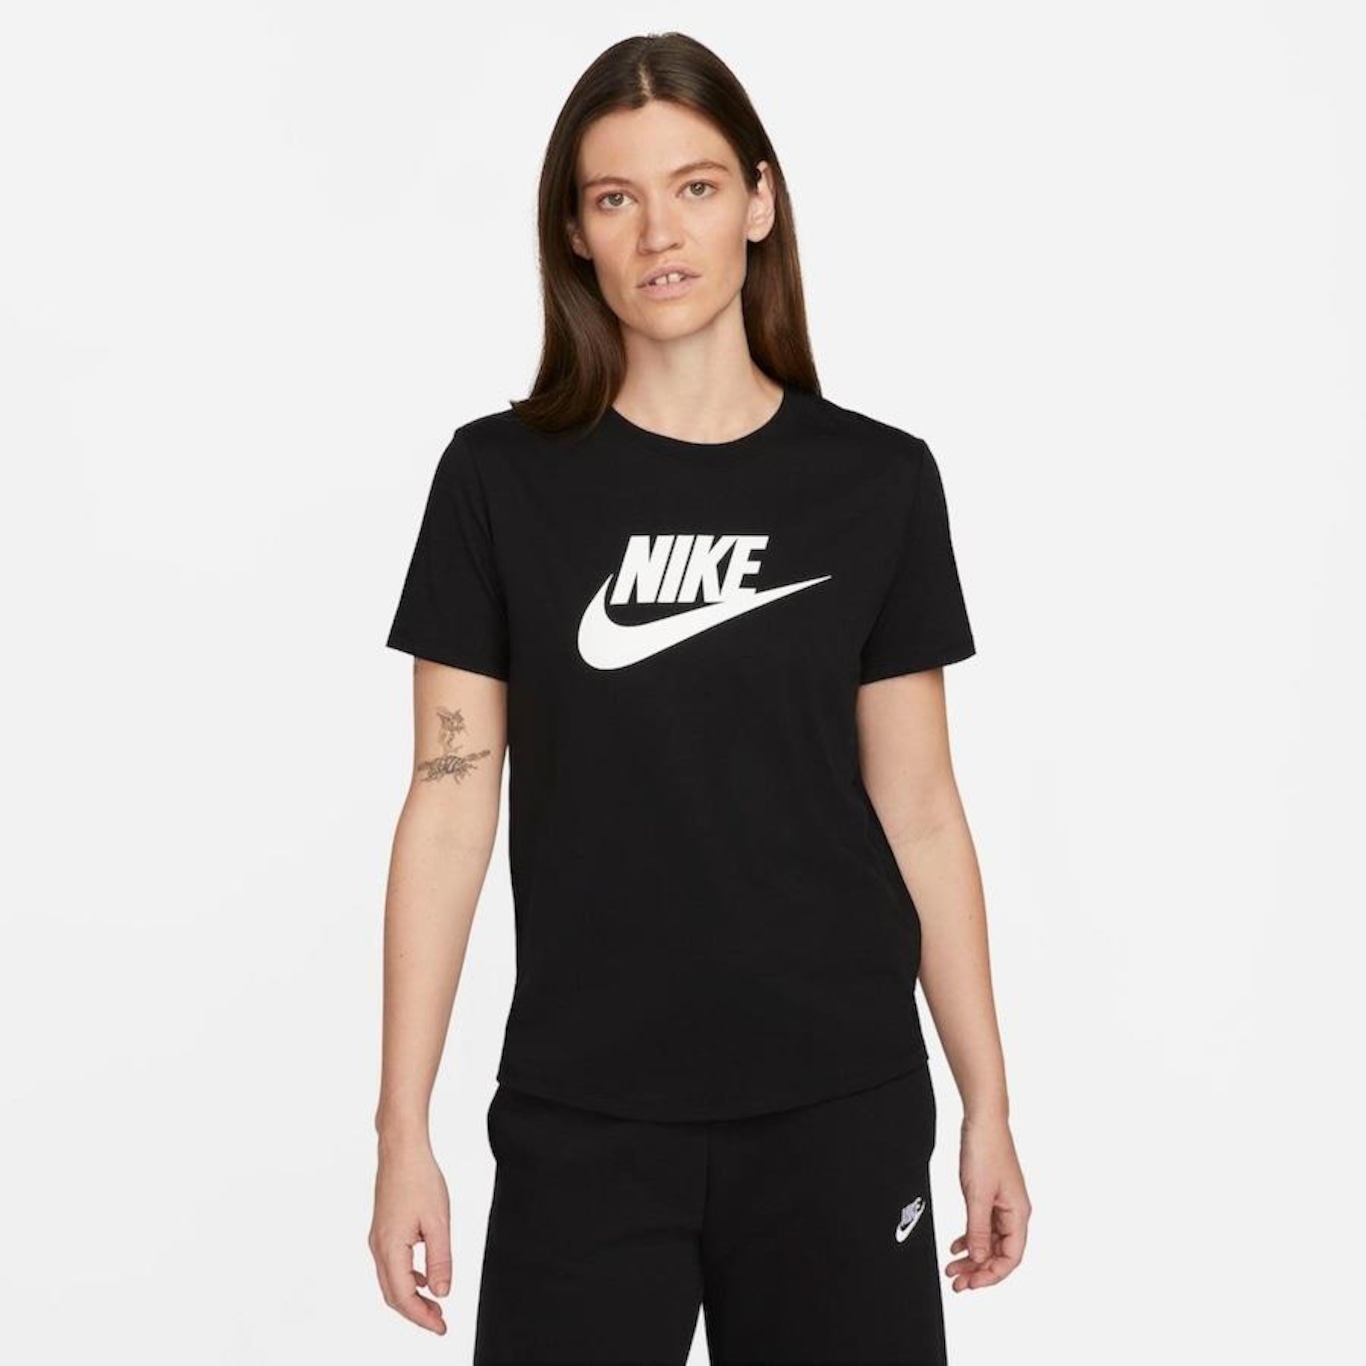 Camiseta Nike Sportswear Fiber Plus Size Feminina - Preto